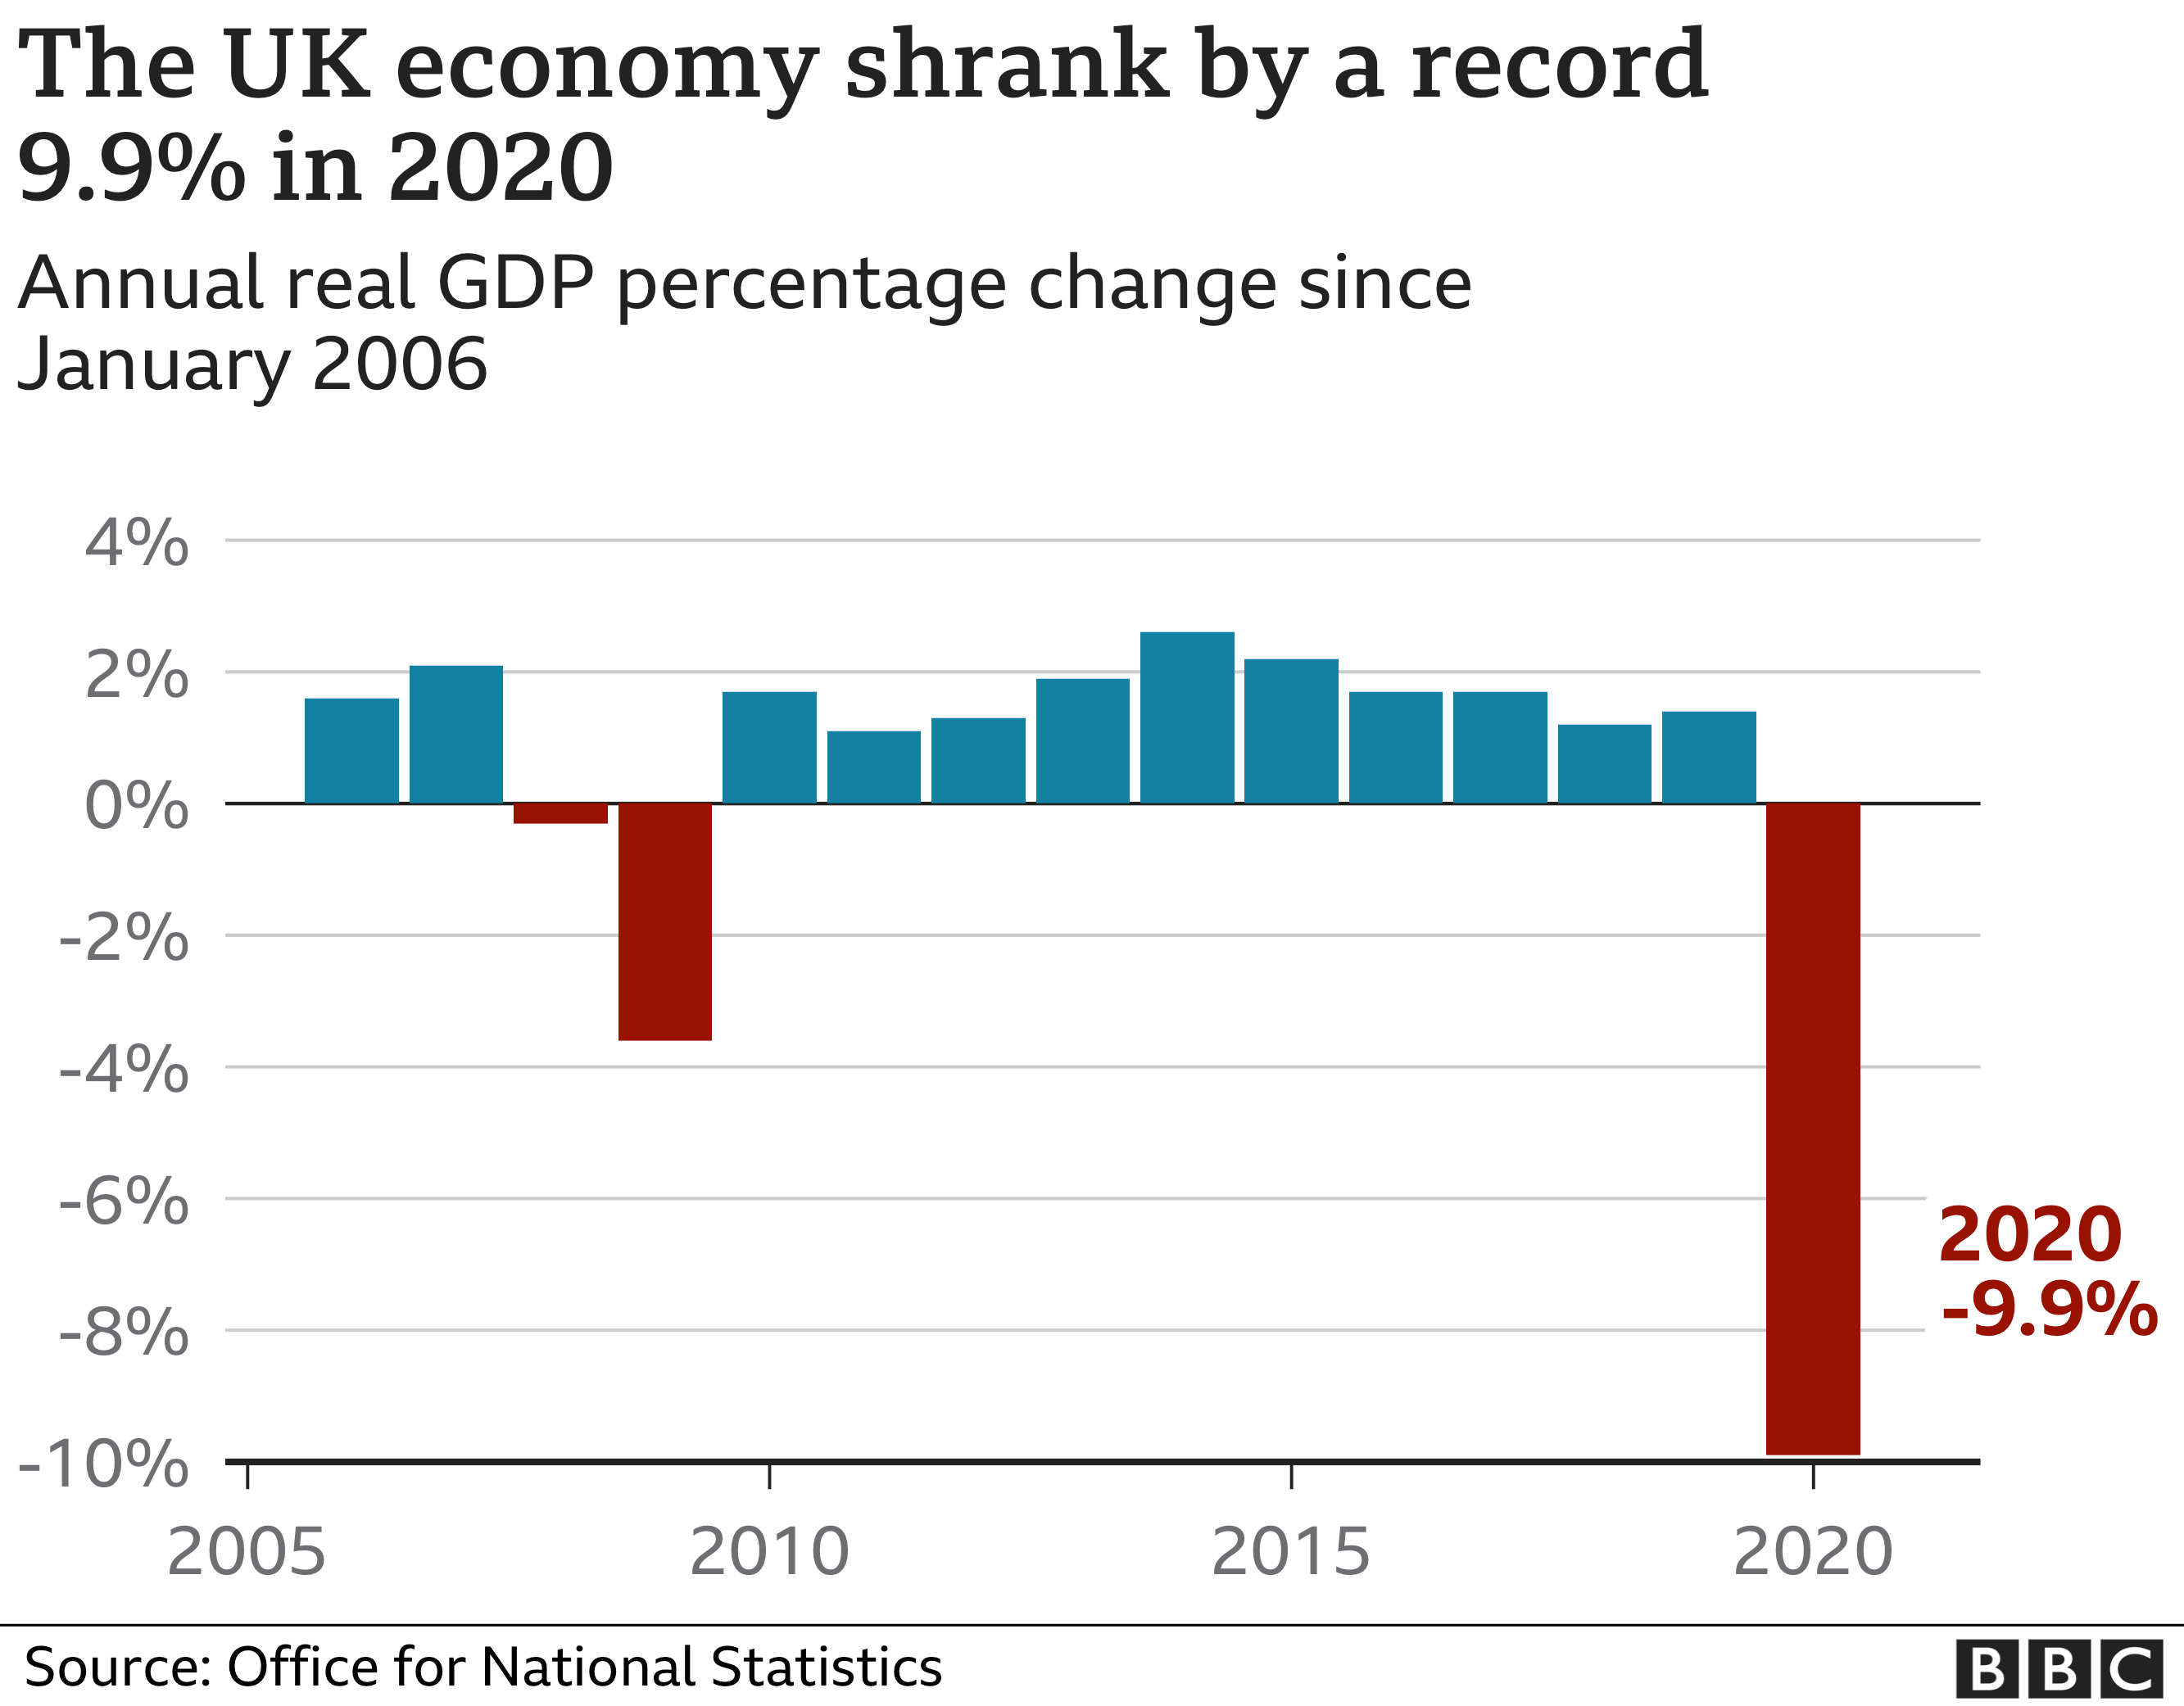 UK economy shrinkage in 2020